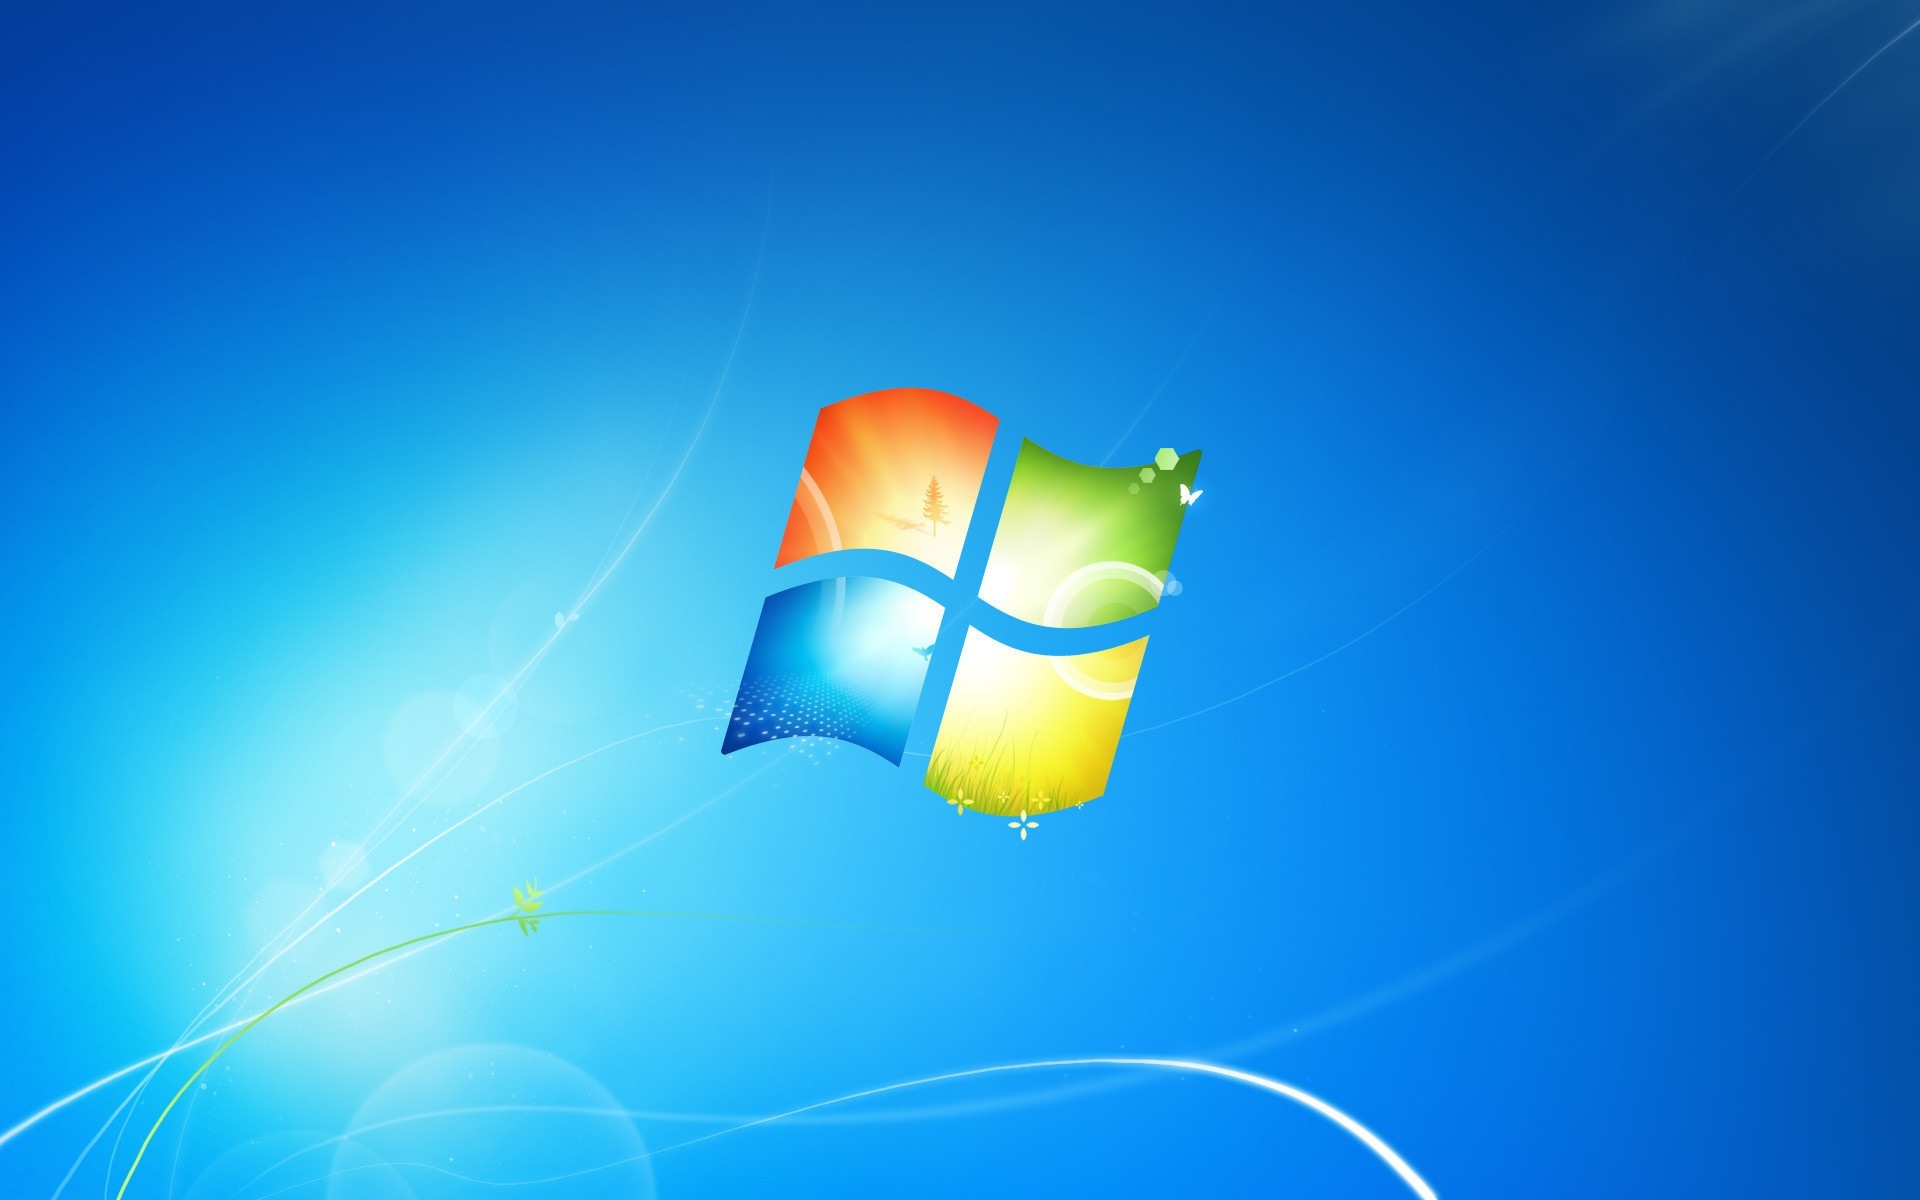 Lösung: Windows 7 aktuell von Aktivierungsproblemen betroffen